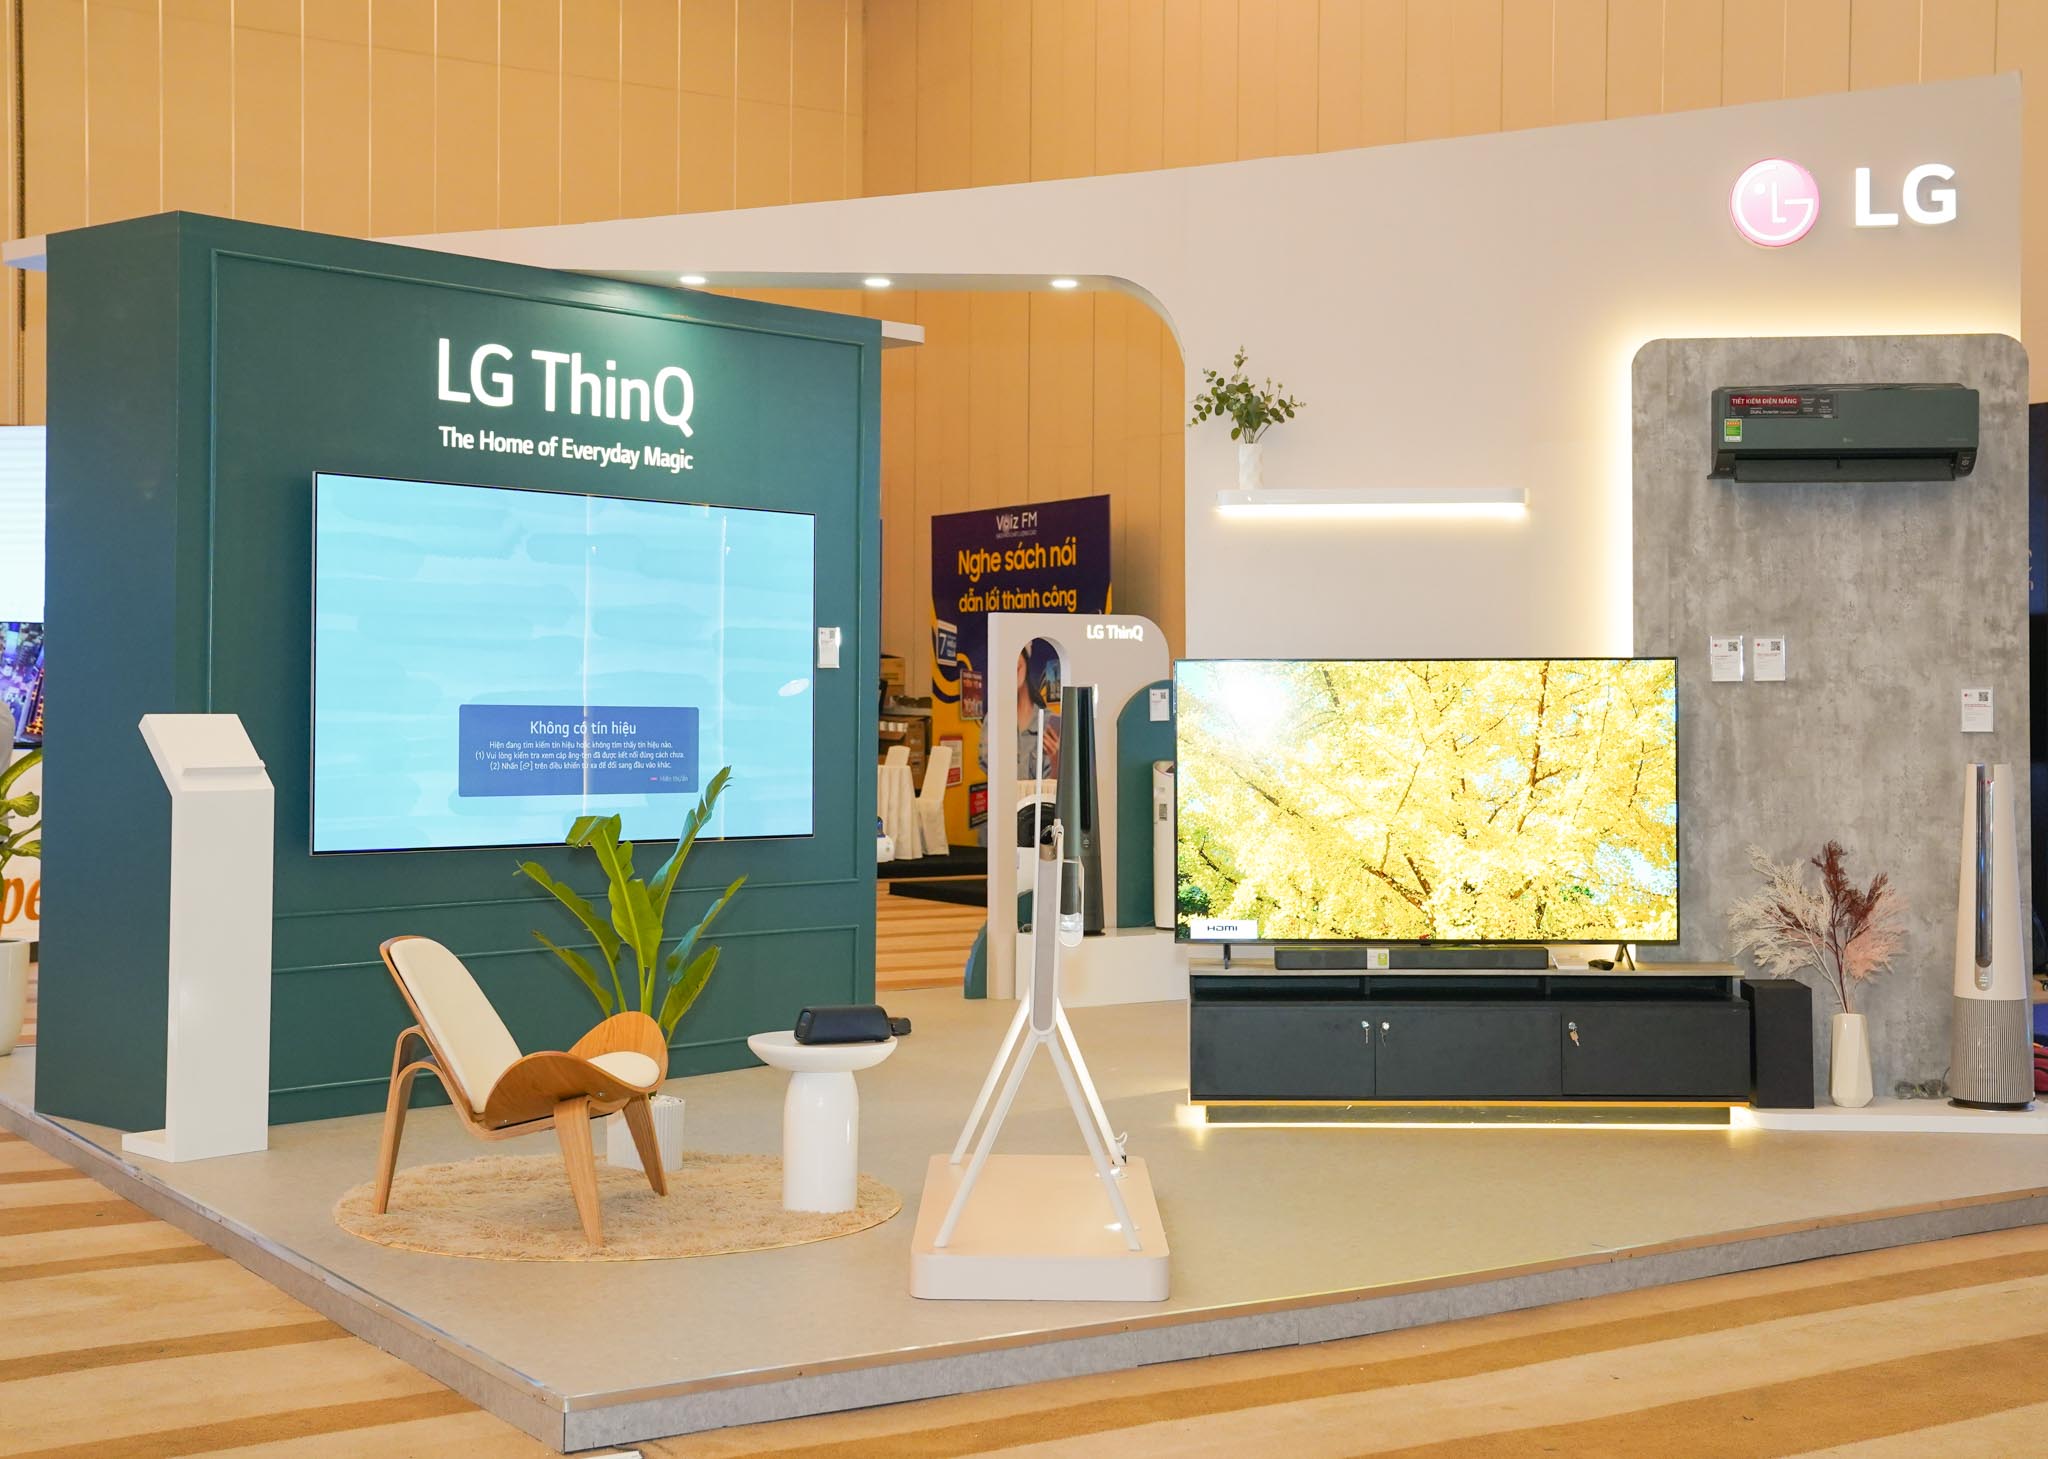 LG ghi dấu với loạt sản phẩm công nghệ ấn tượng tại Tech Awards 2022